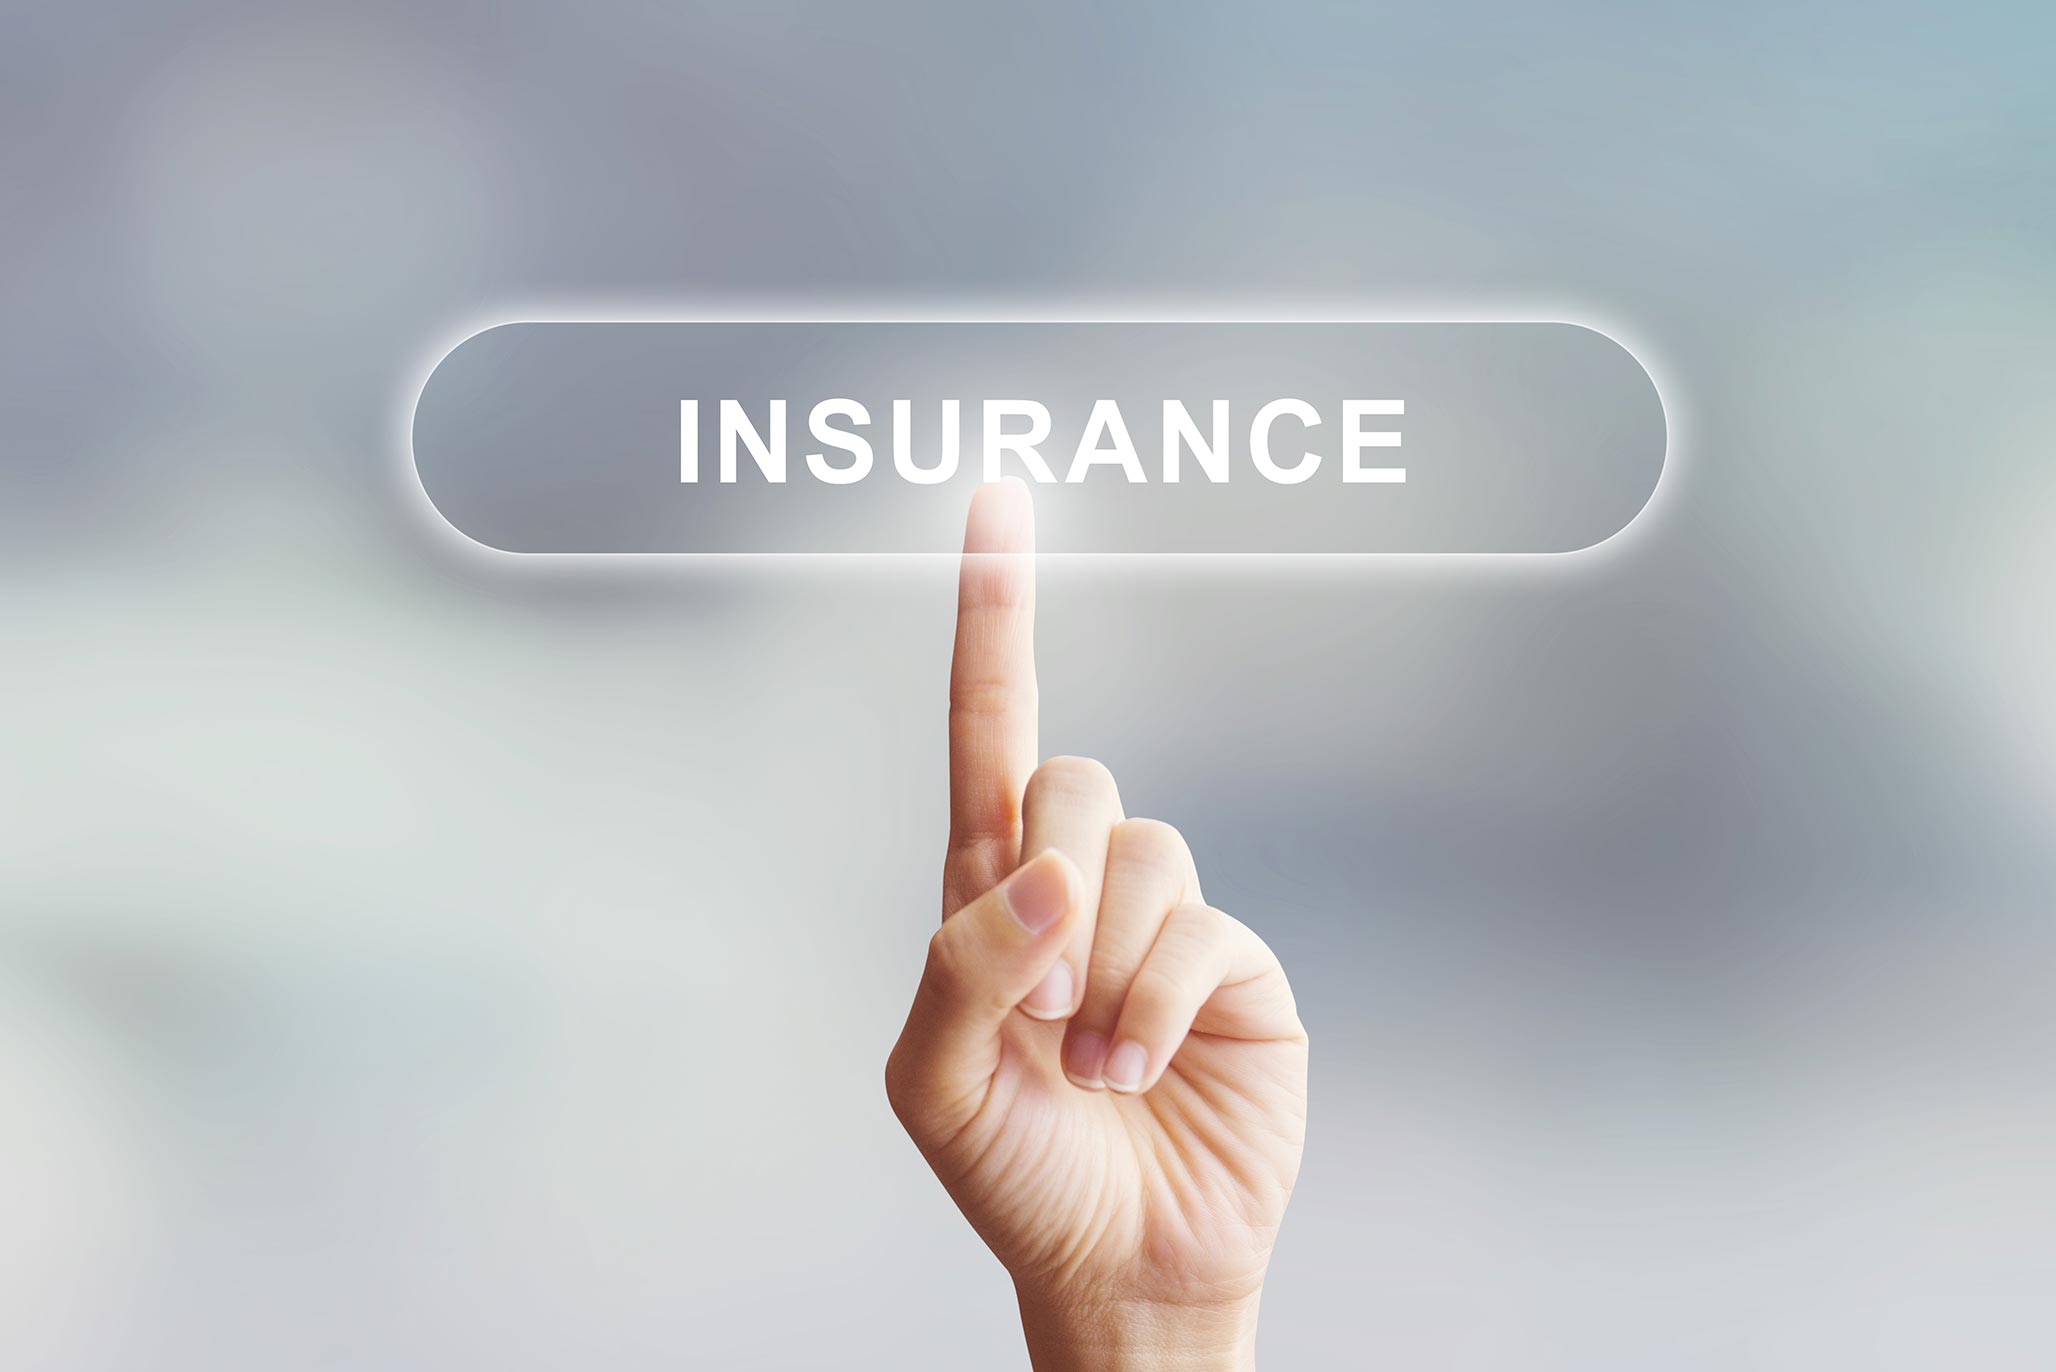 Online insurance in a few clicks